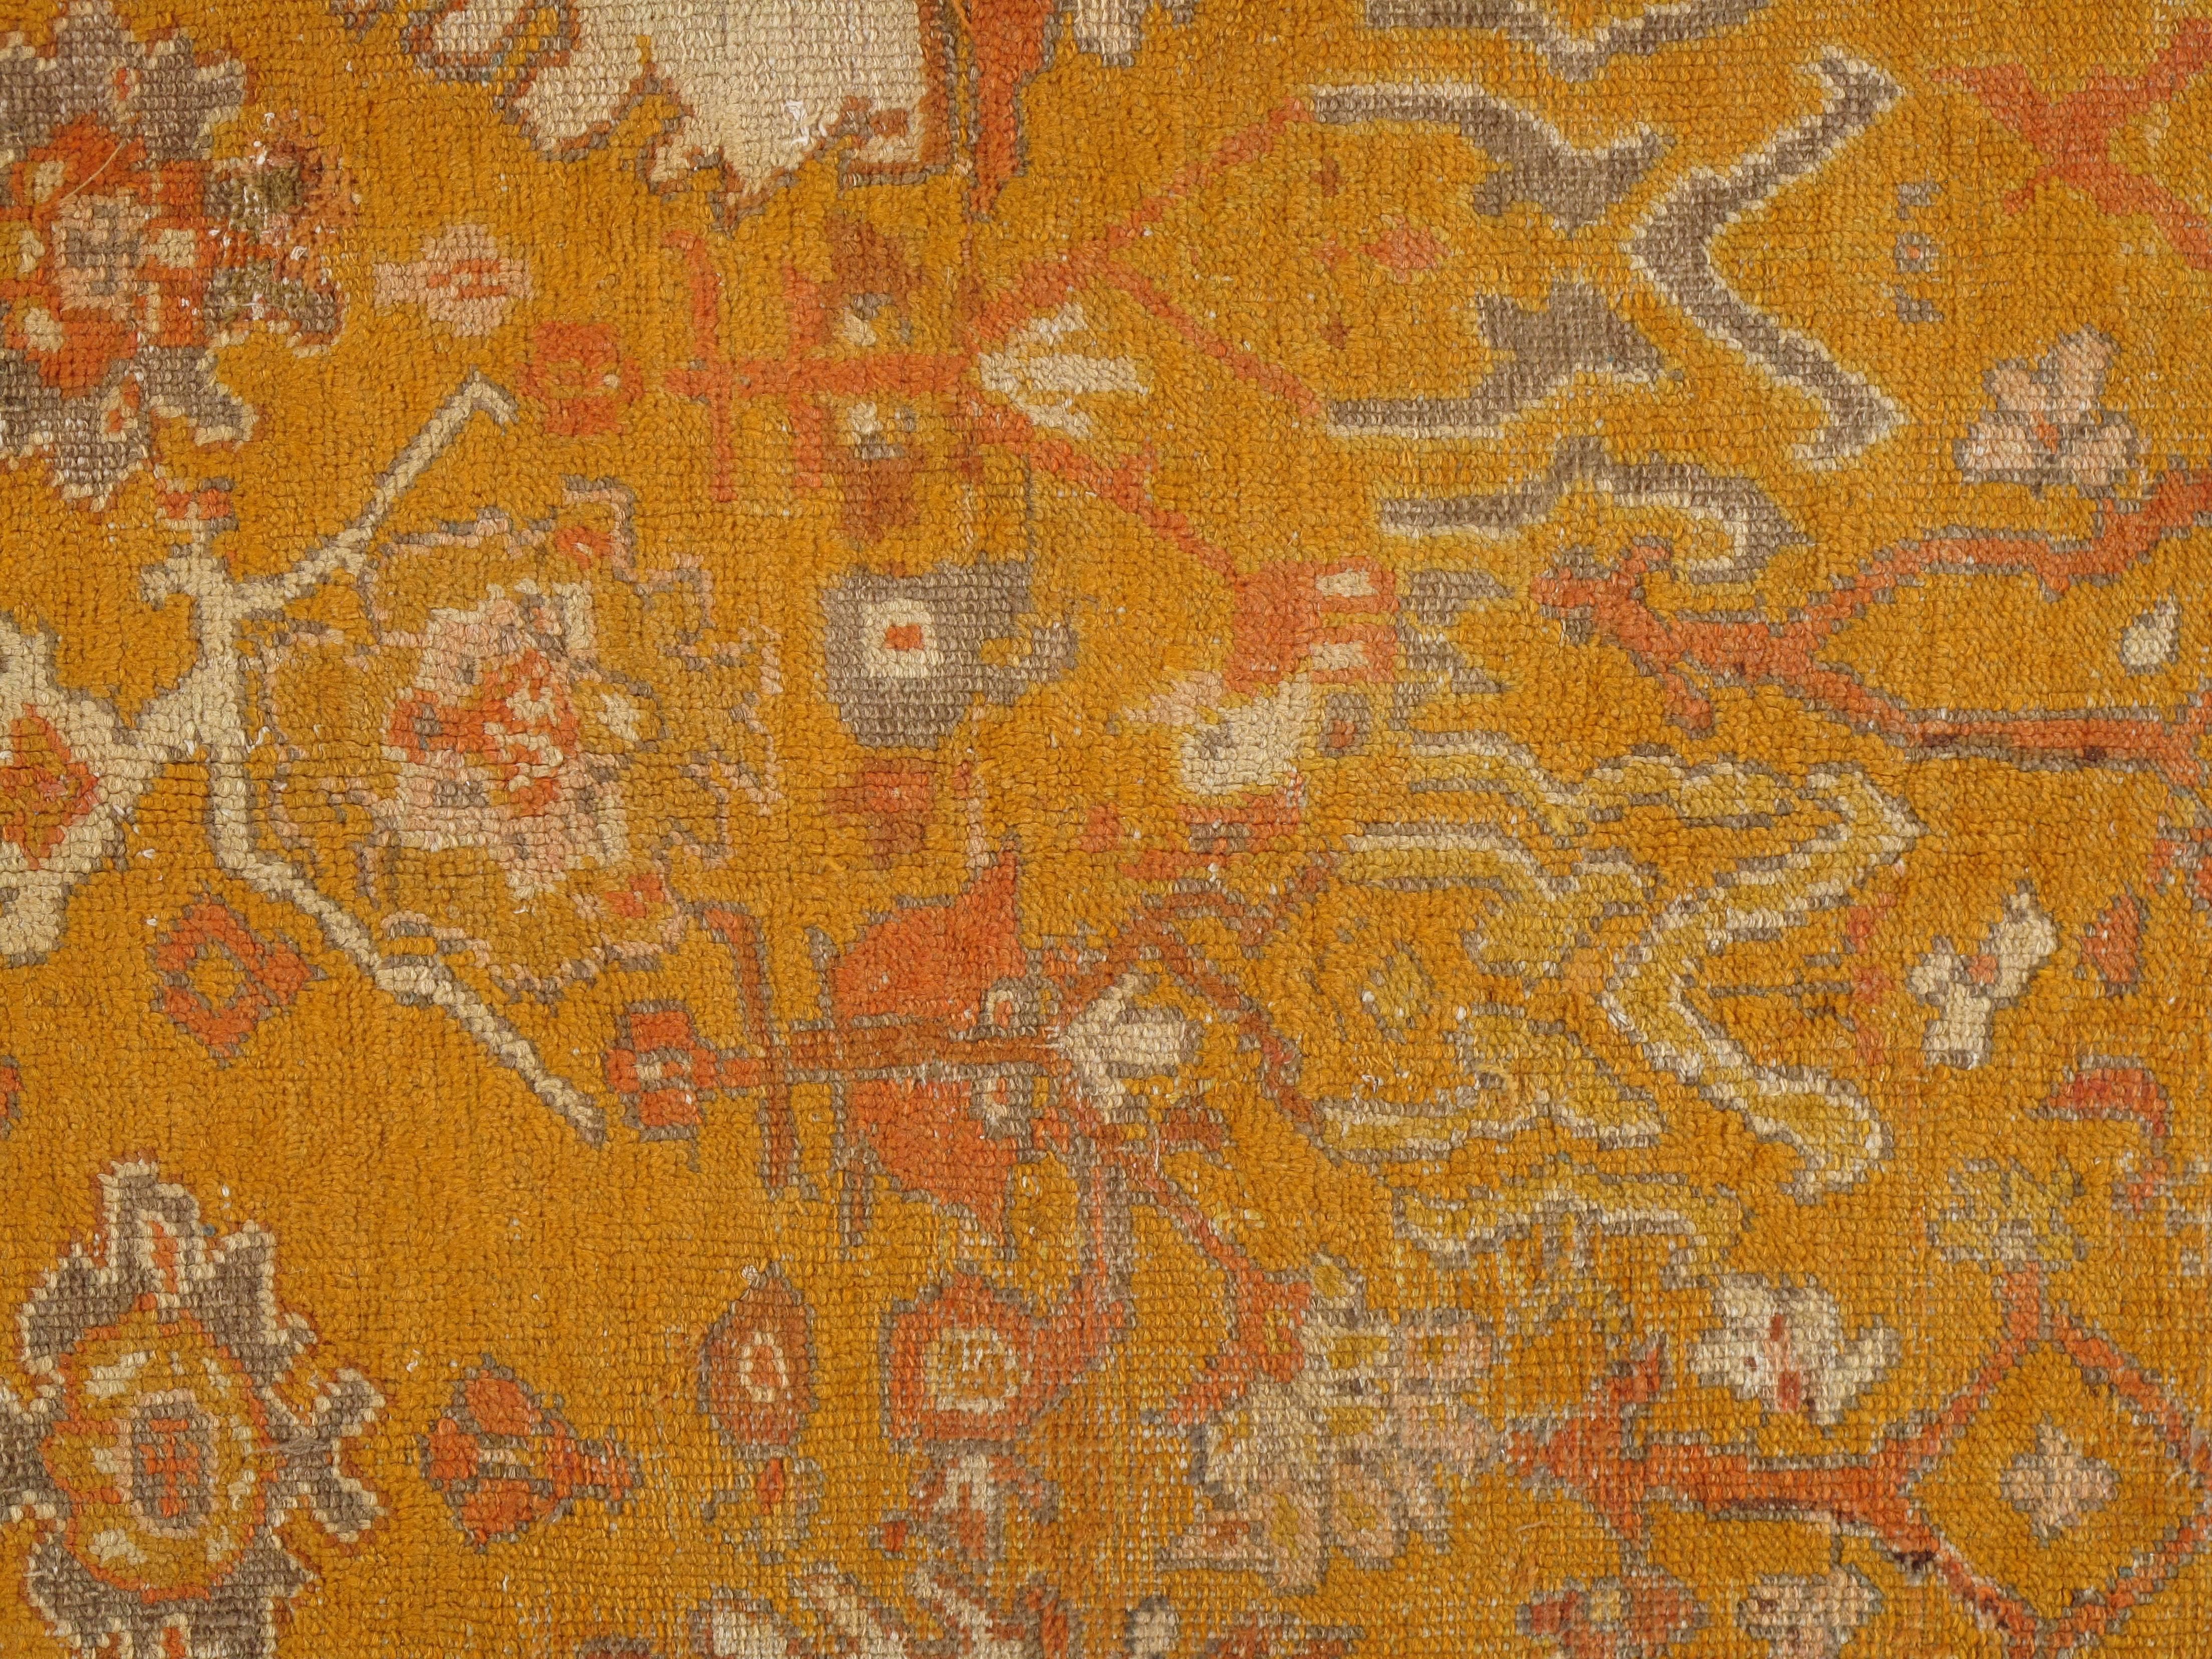 Antique Oushak Carpet, Oriental Rug, Handmade Orange, Ivory and Saffron (Türkisch)